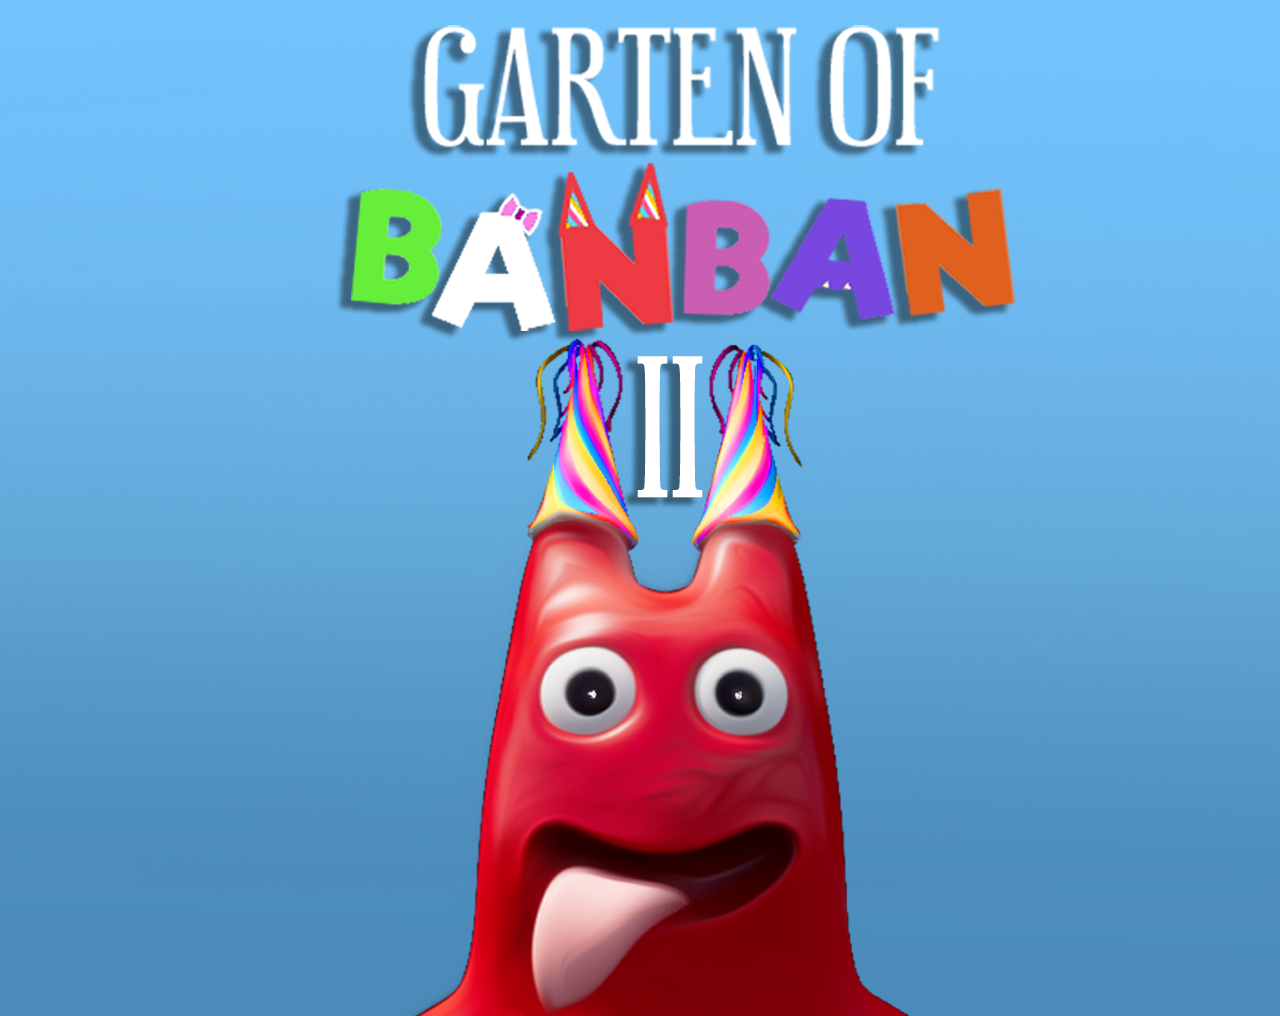 Garten of Banban 2 on the App Store